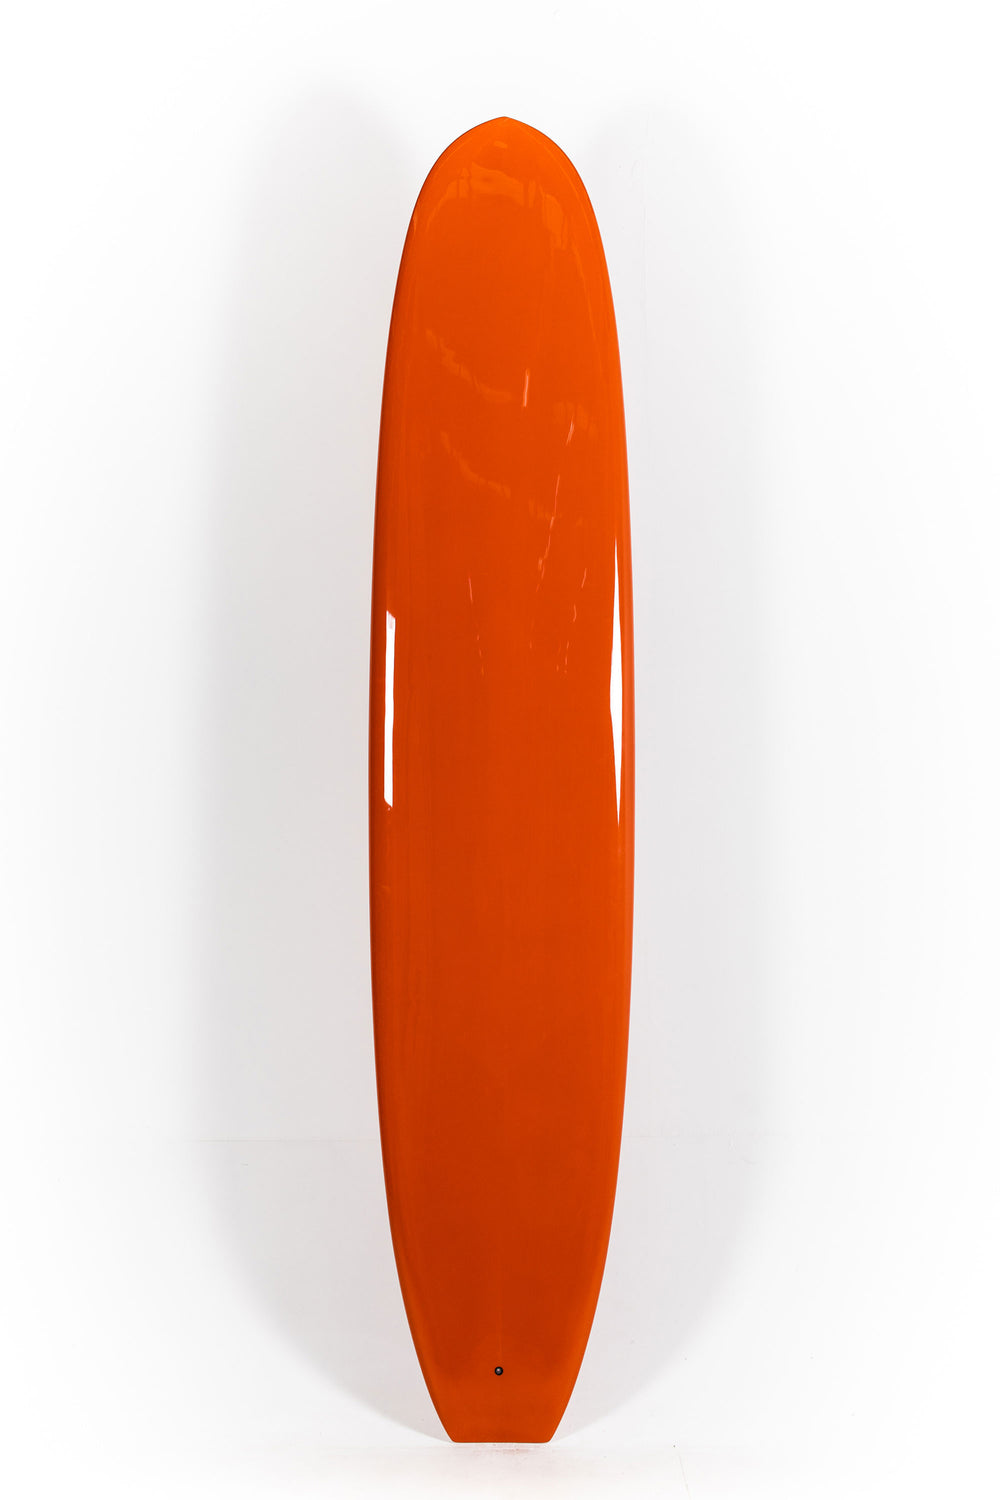 Pukas Surf Shop - Christenson Surfboards - BONNEVILLE - 9'3